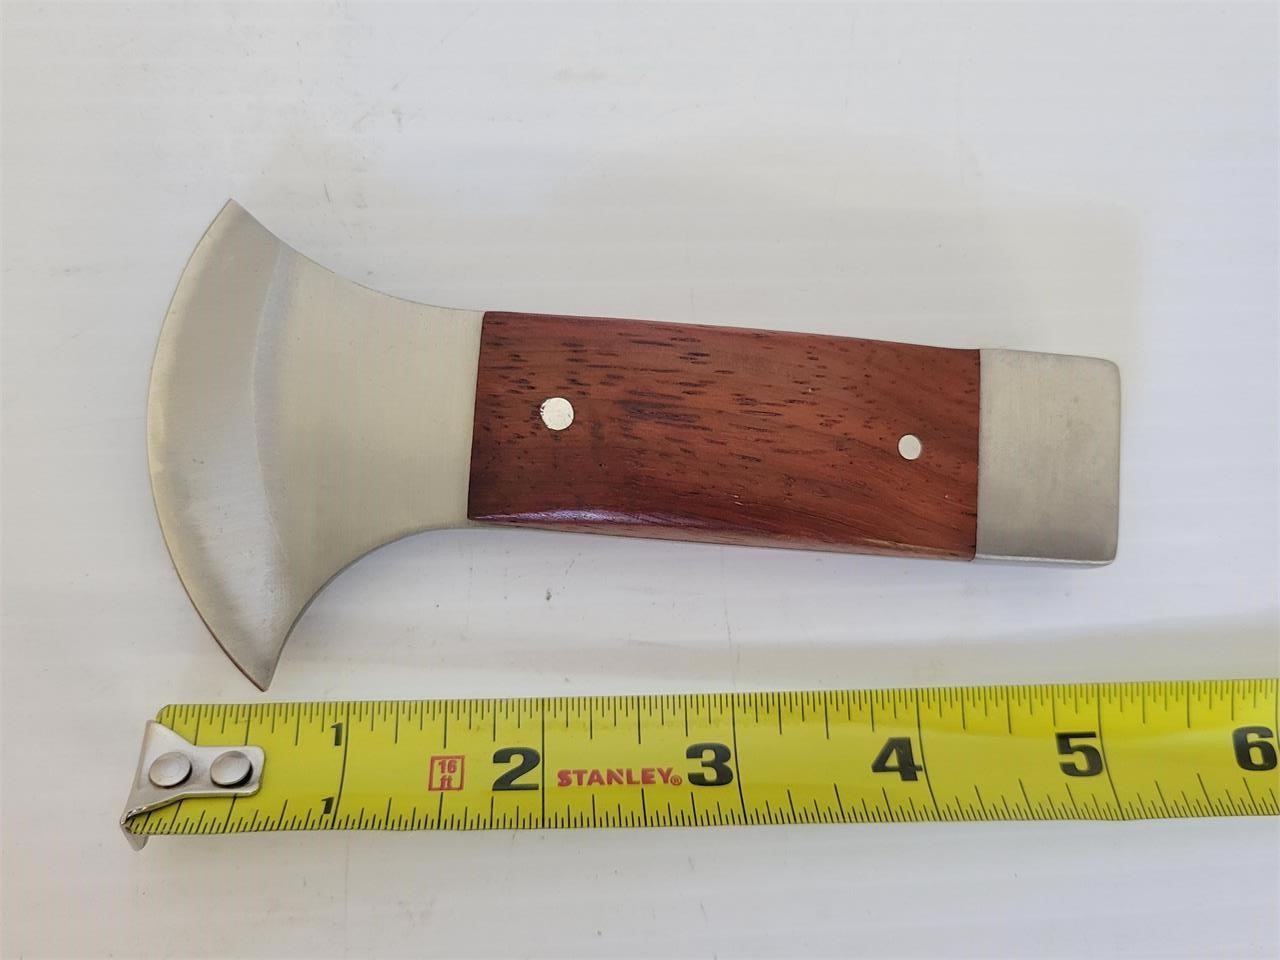 Unique knife